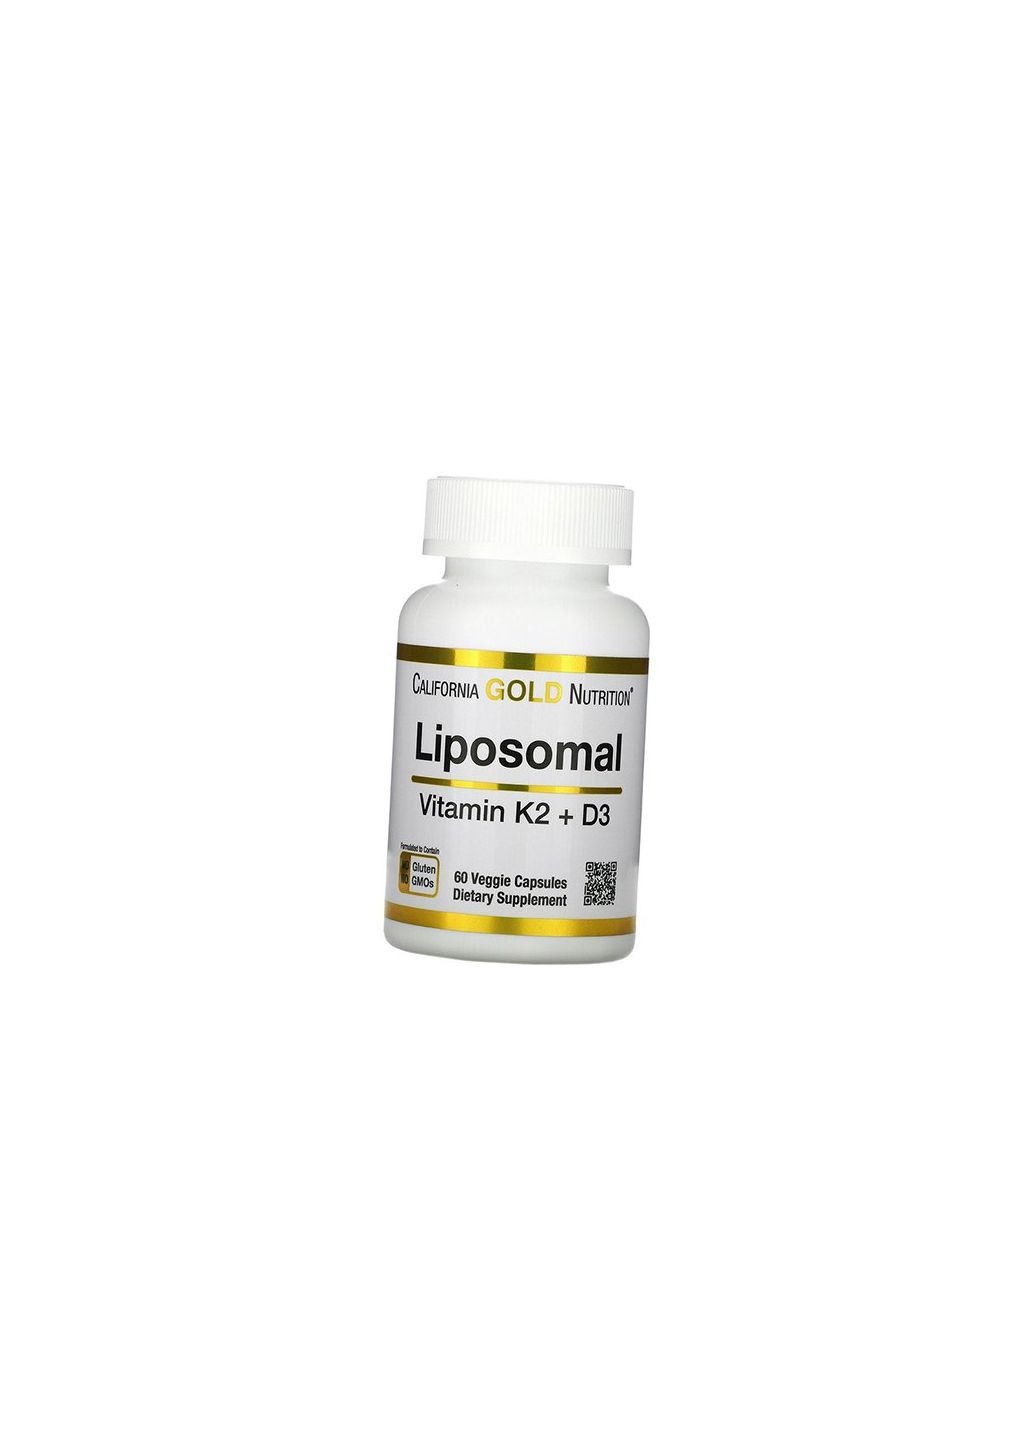 Липосомальные Витамины К2 и Д3, Liposomal Vitamin K2+ D3, 60вегкапс 36427014, (36427014) California Gold Nutrition (293254609)